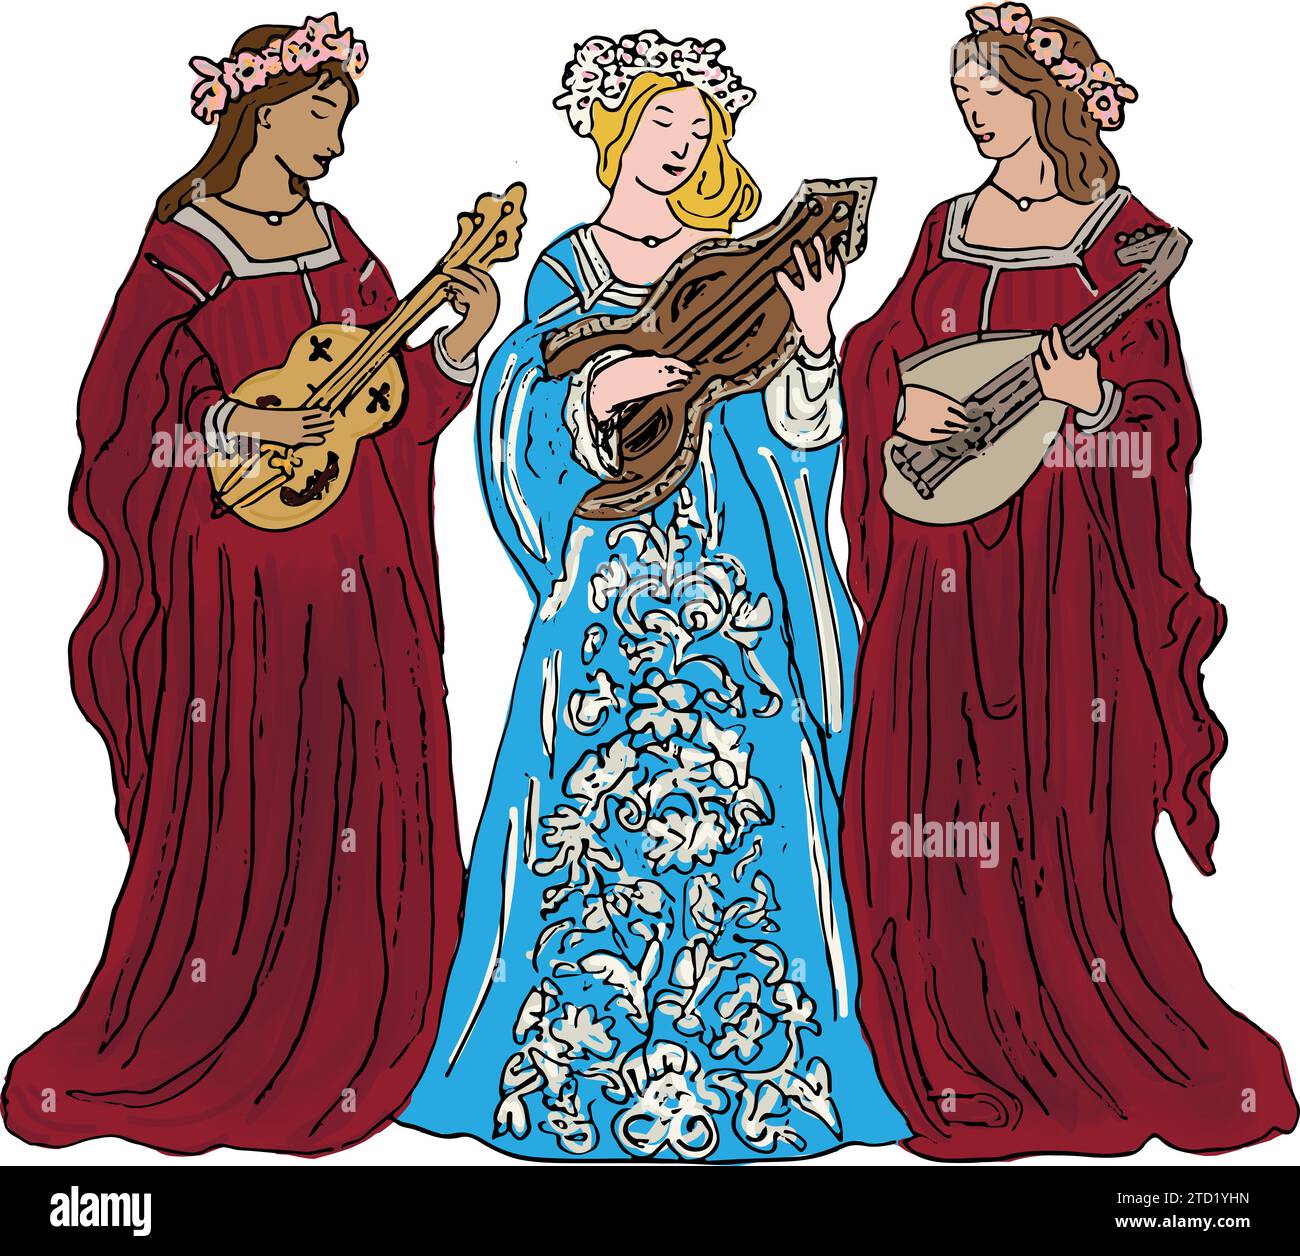 Illustration de trois ménestrels féminins médiévaux jouant des instruments à cordes, des robes rouges et bleues, des fleurs dans les cheveux Illustration de Vecteur